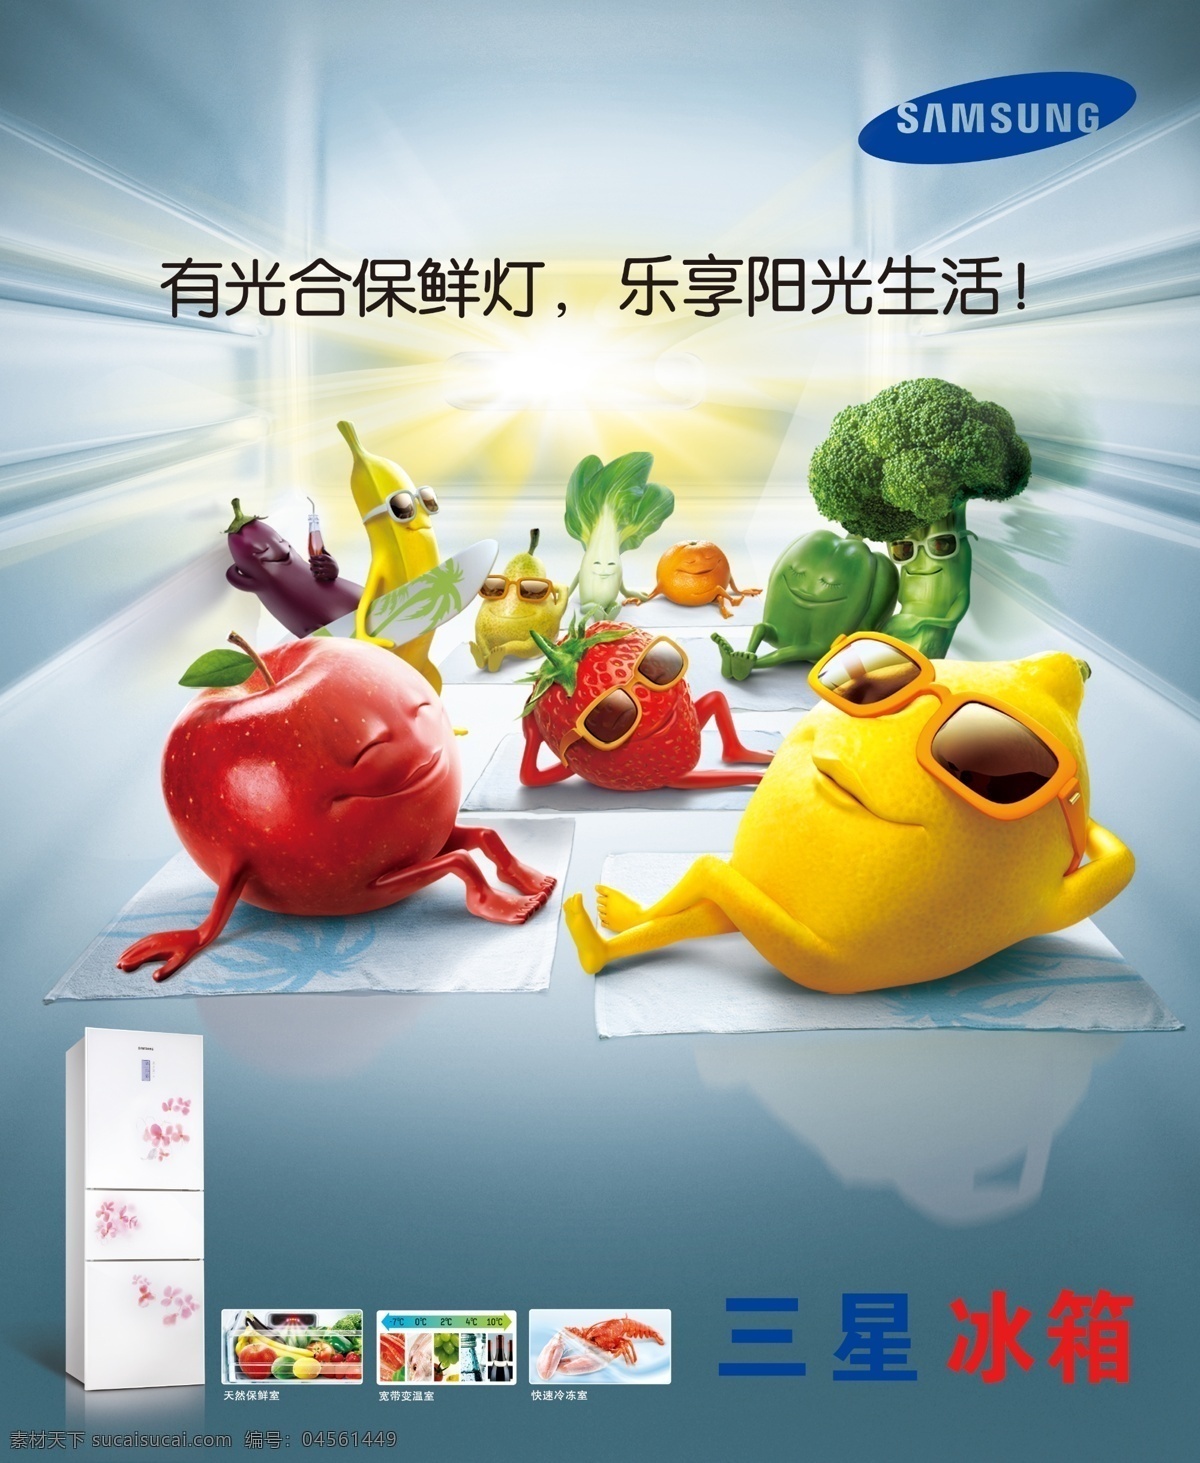 三星 冰箱 广告 分层 模版下载 光合保鲜 灯 乐享阳光生活 柠檬 苹果 荔枝